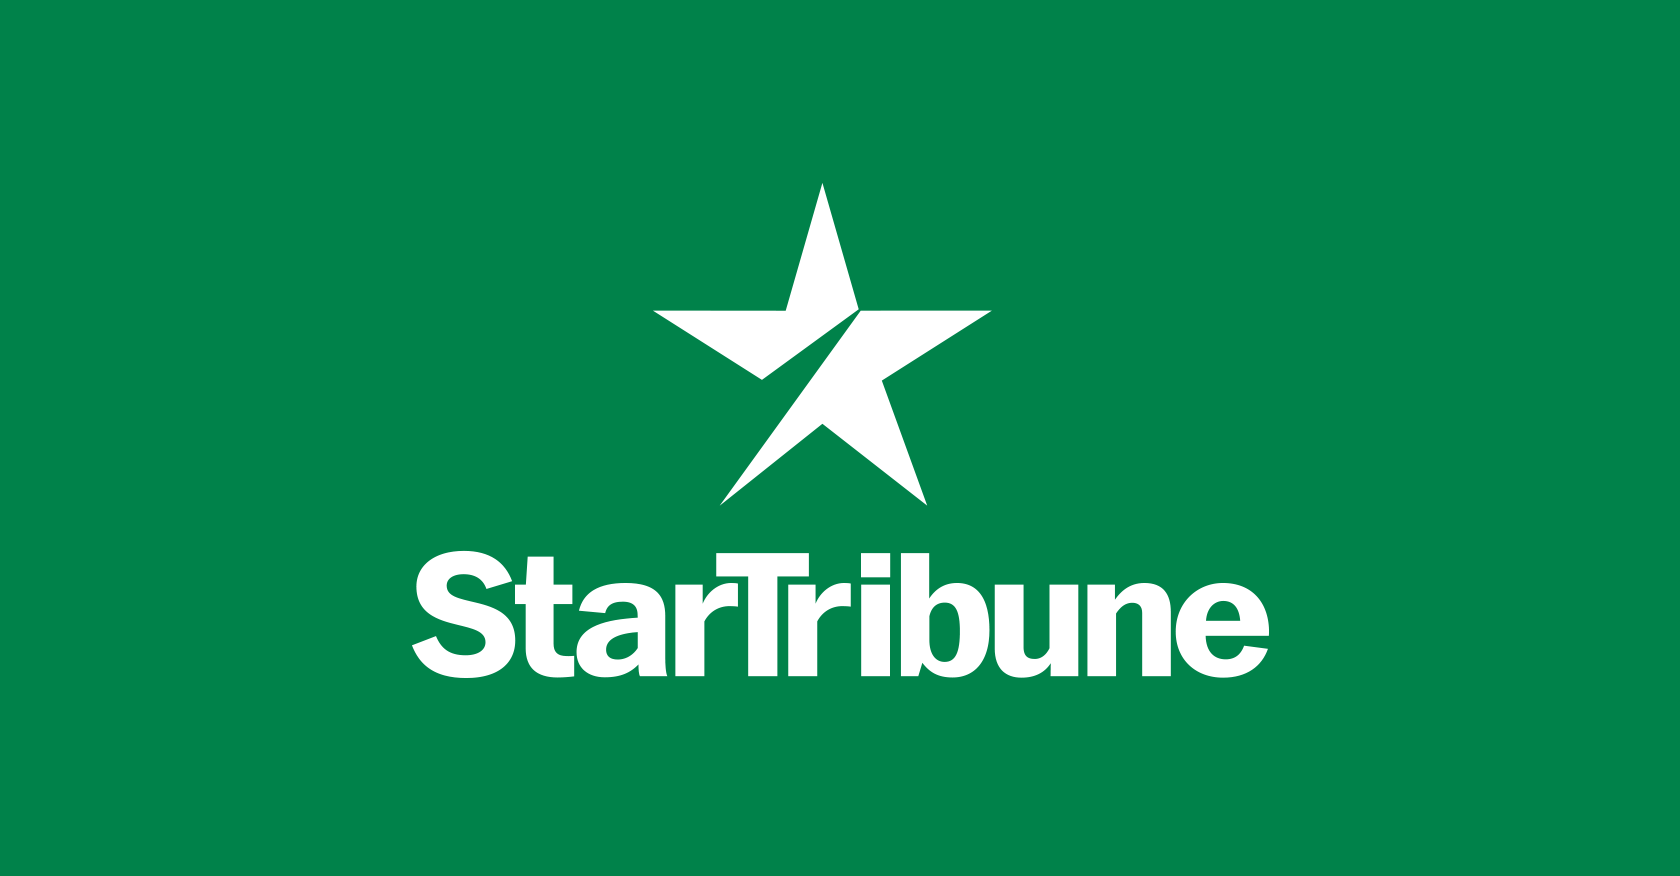 Sign up for daily Star Tribune coronavirus updates